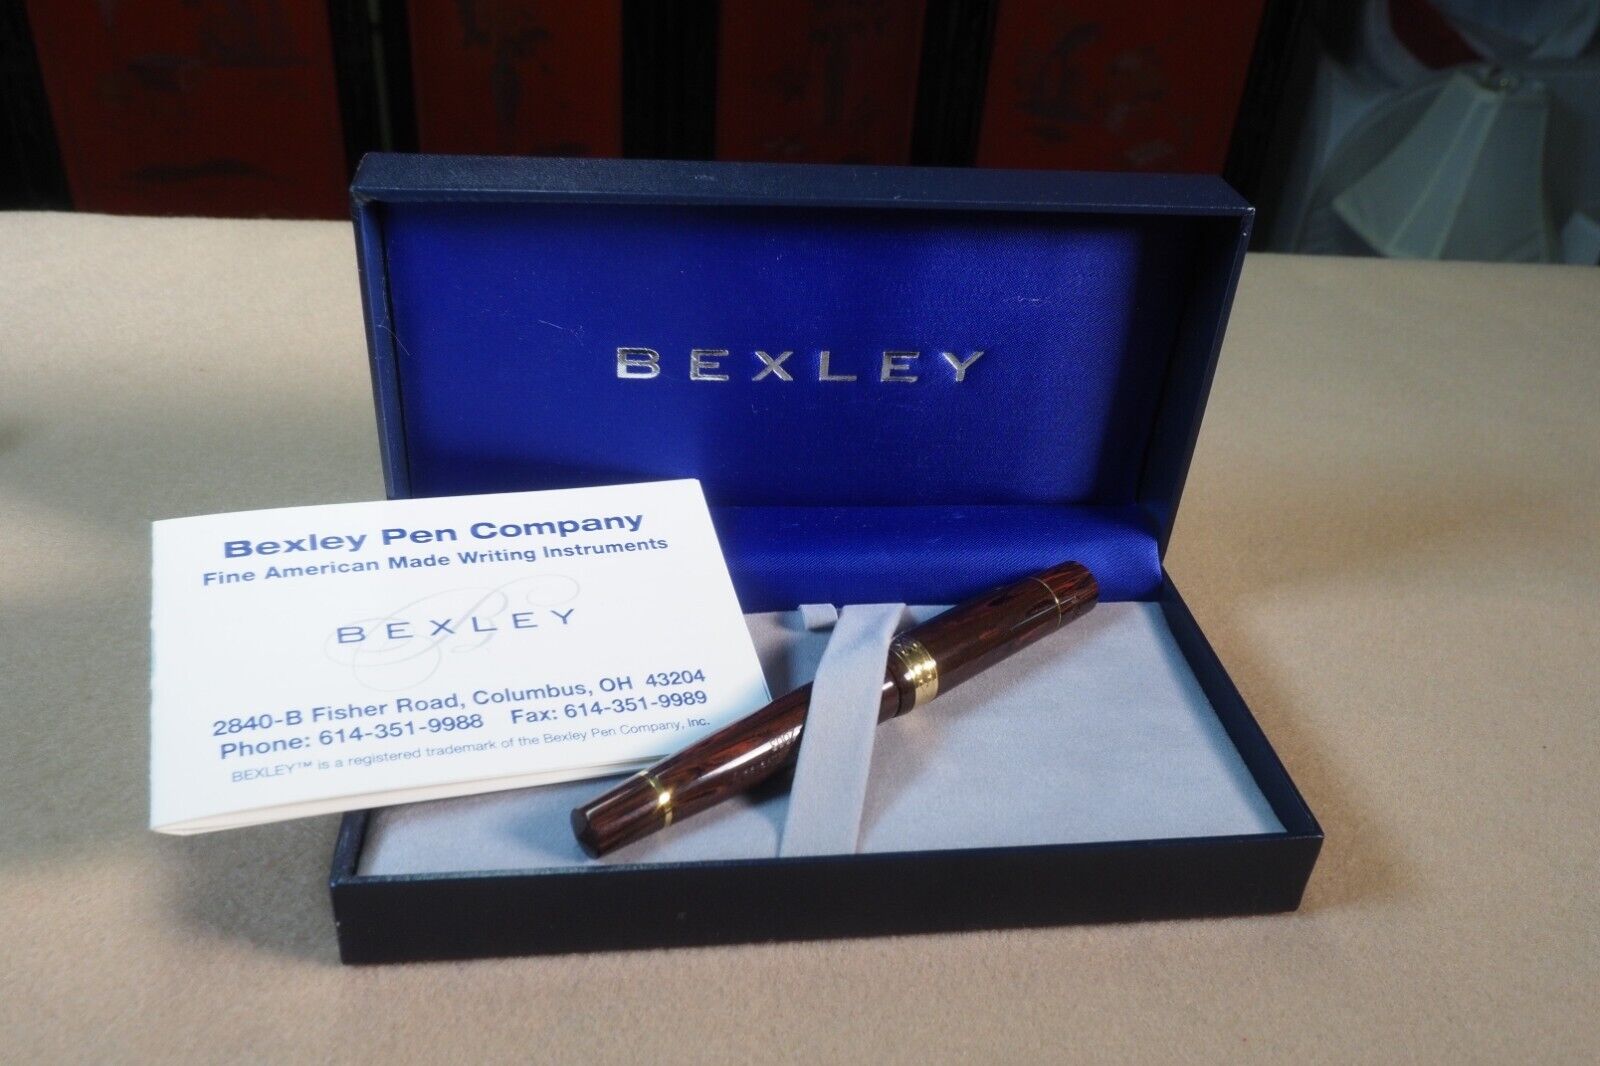 Bexley 10th Anniversary fountain pen in auburn ebonite, 18K medium nib